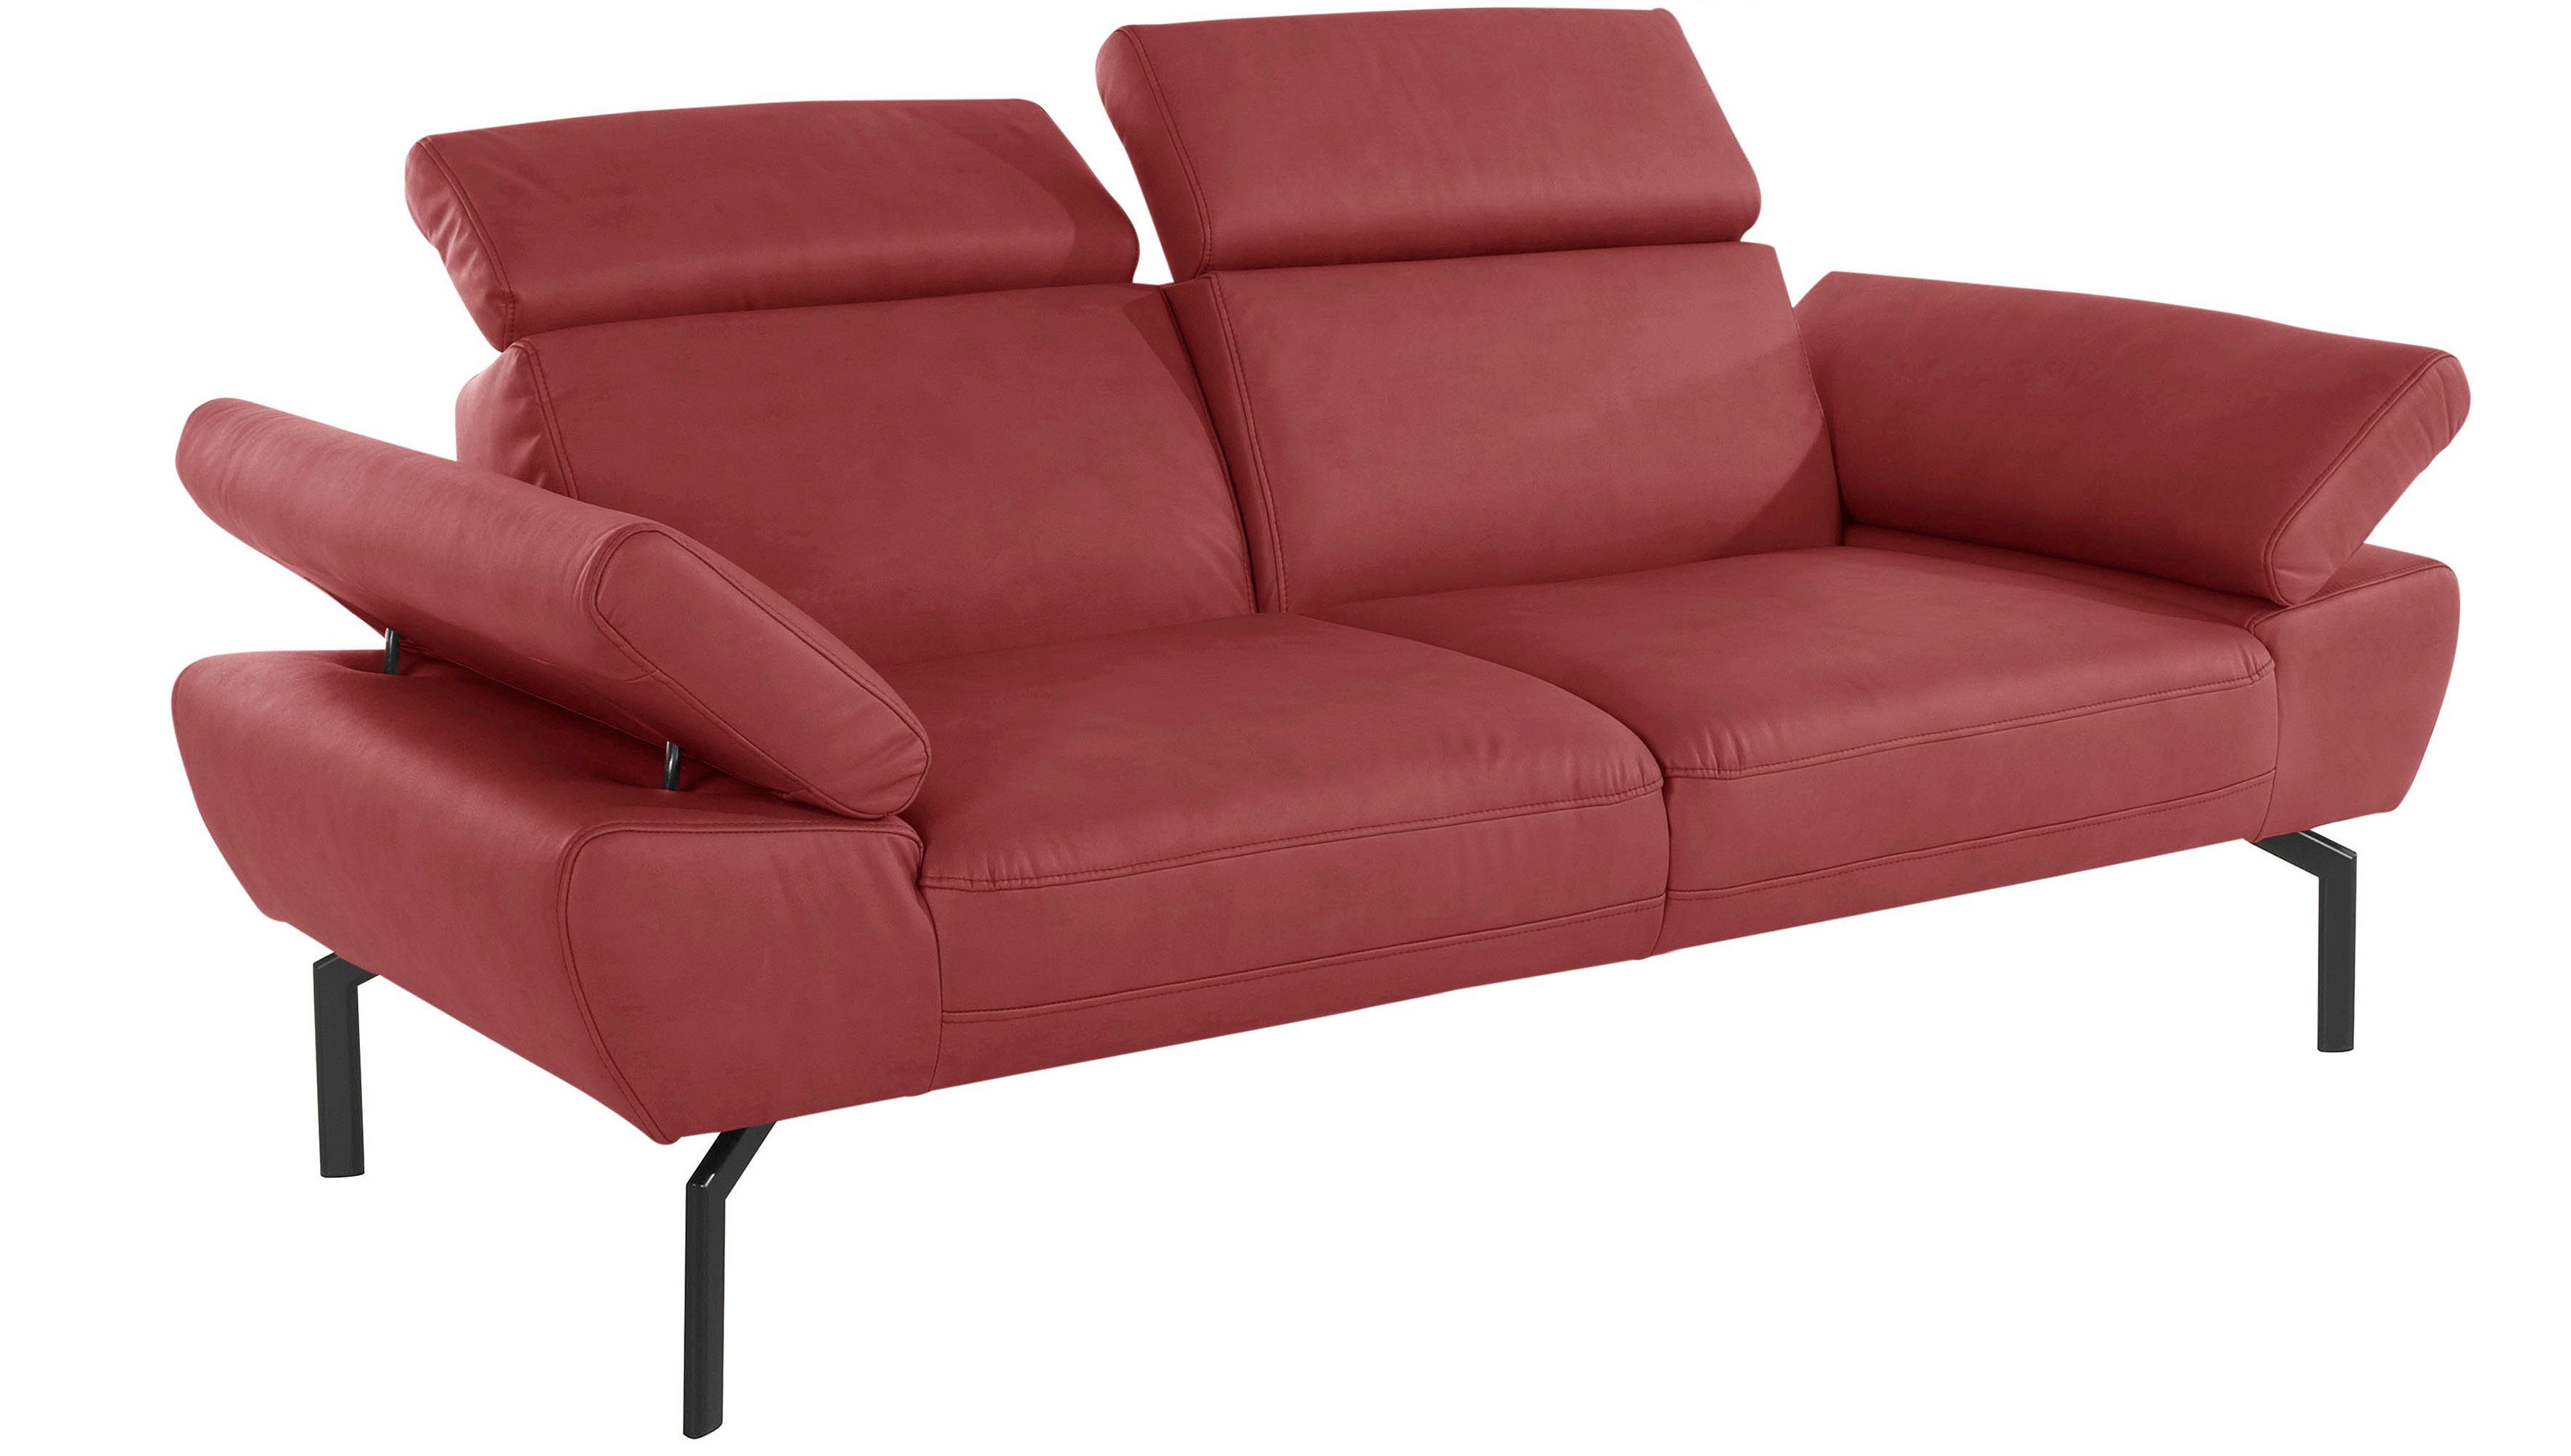 Luxus-Microfaser Places of 2-Sitzer mit Trapino Luxus, in Rückenverstellung, Lederoptik wahlweise Style